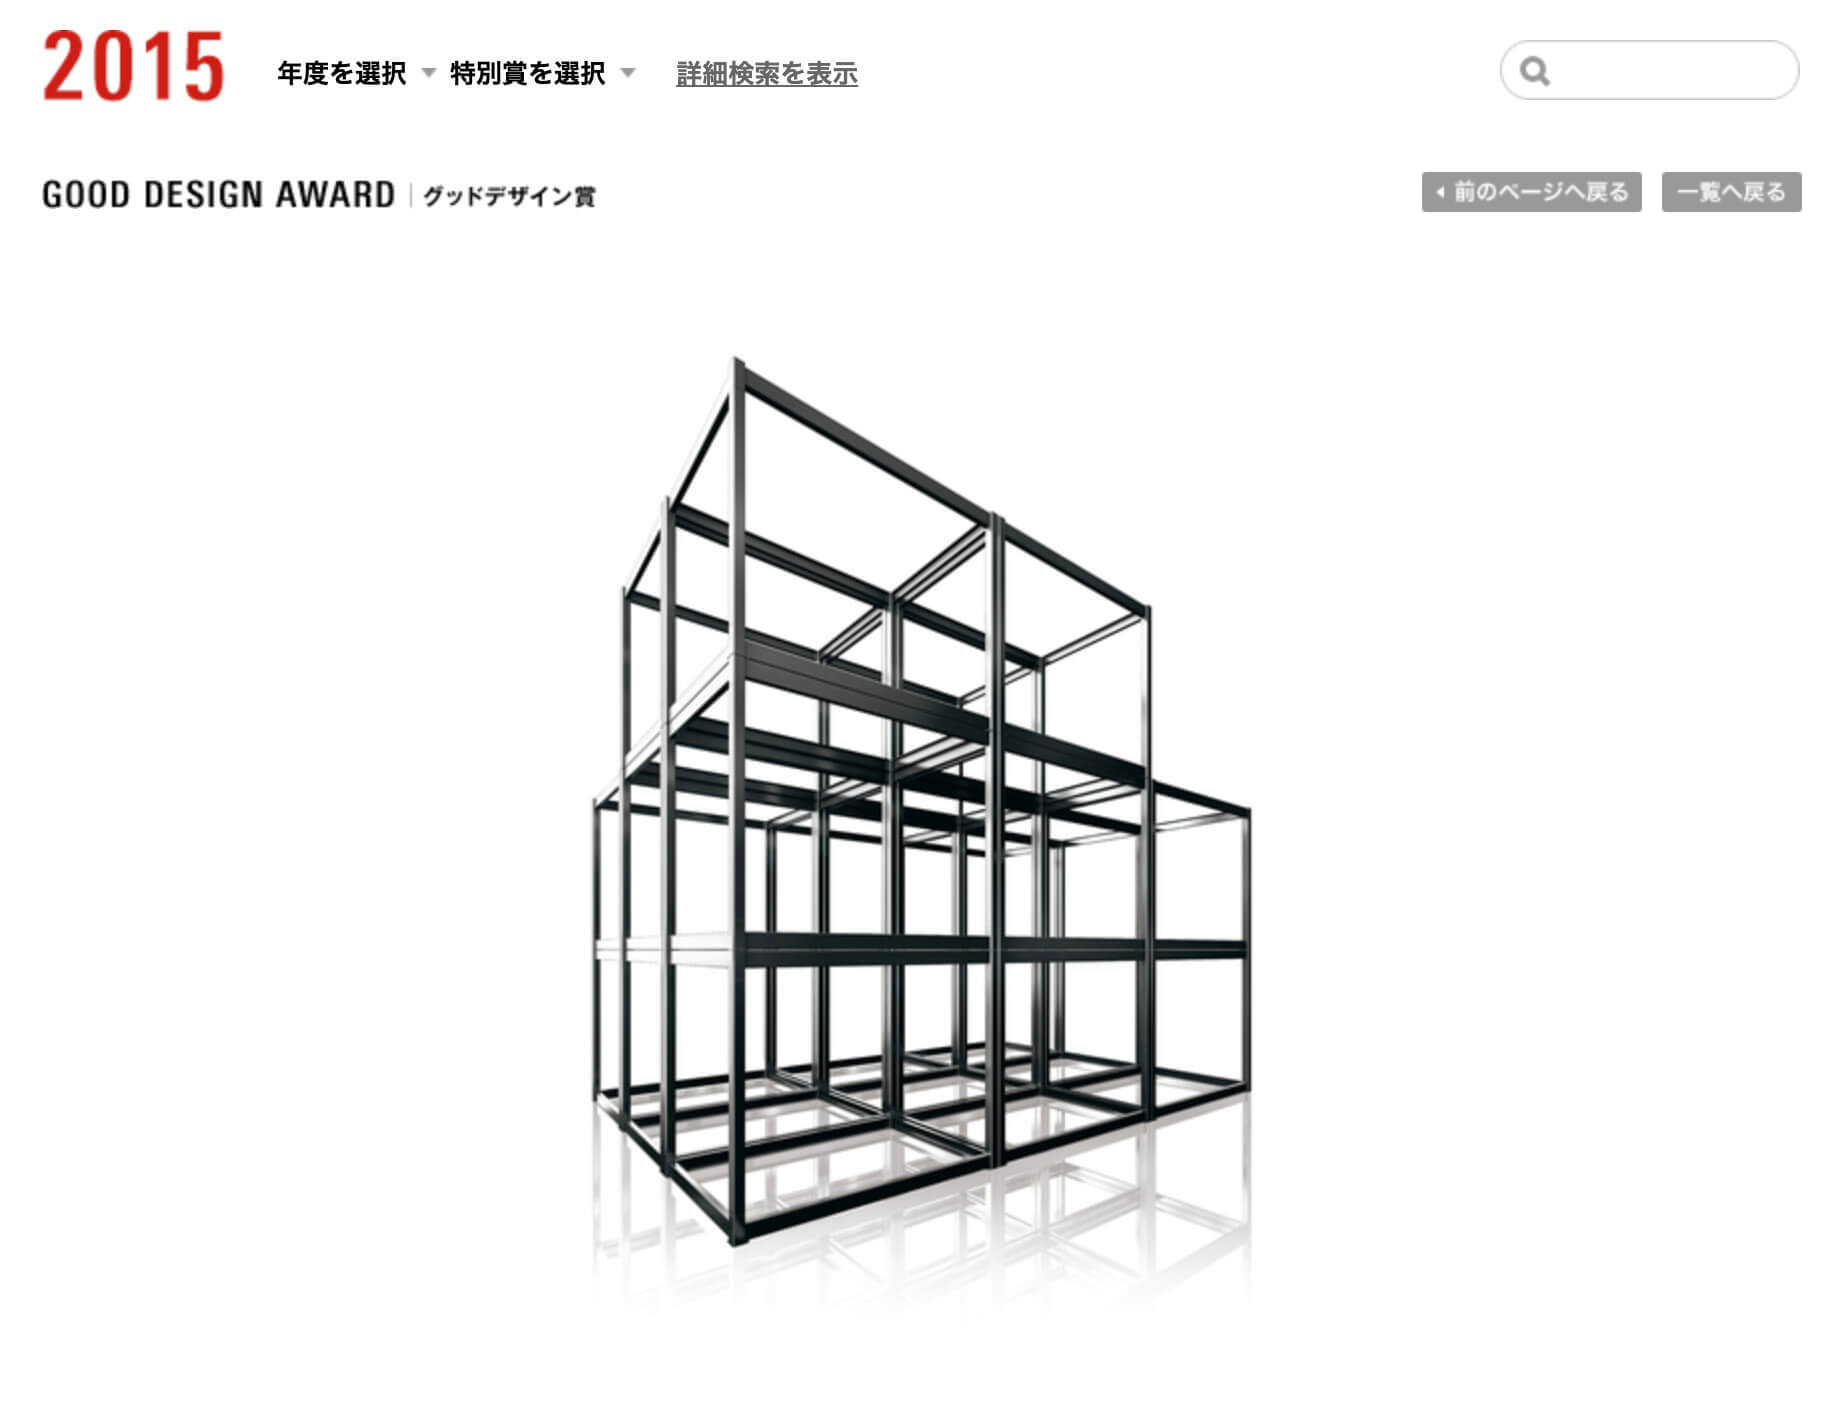 トヨタホームのシンセシリーズ「鉄骨ラーメンユニット構造」は、工業化住宅シンセとして「2015年度グッドデザイン賞」（主催：公益財団法人日本デザイン振興会）を受賞しています。